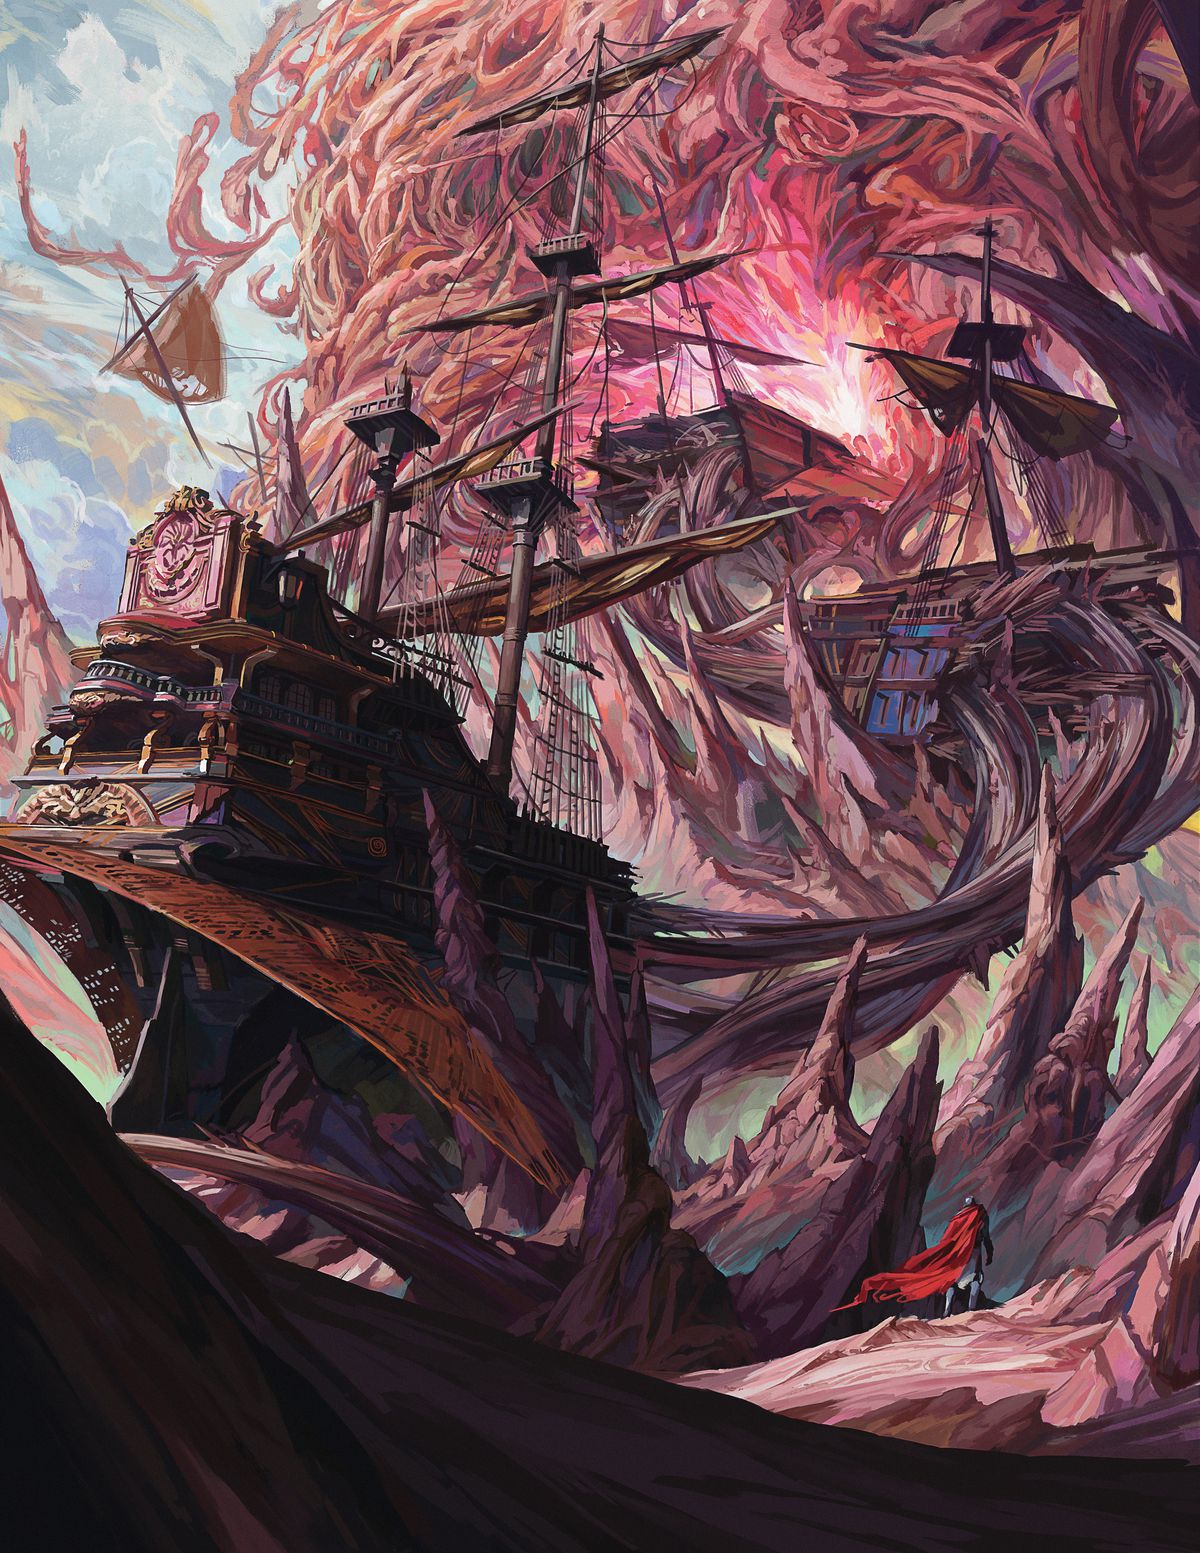 En pansarfigur står på ett främmande lila landskap.  Ovanför dem konst två halvor av ett skepp med hög mast inhyst i en stor rosa vägg i udda vinklar.